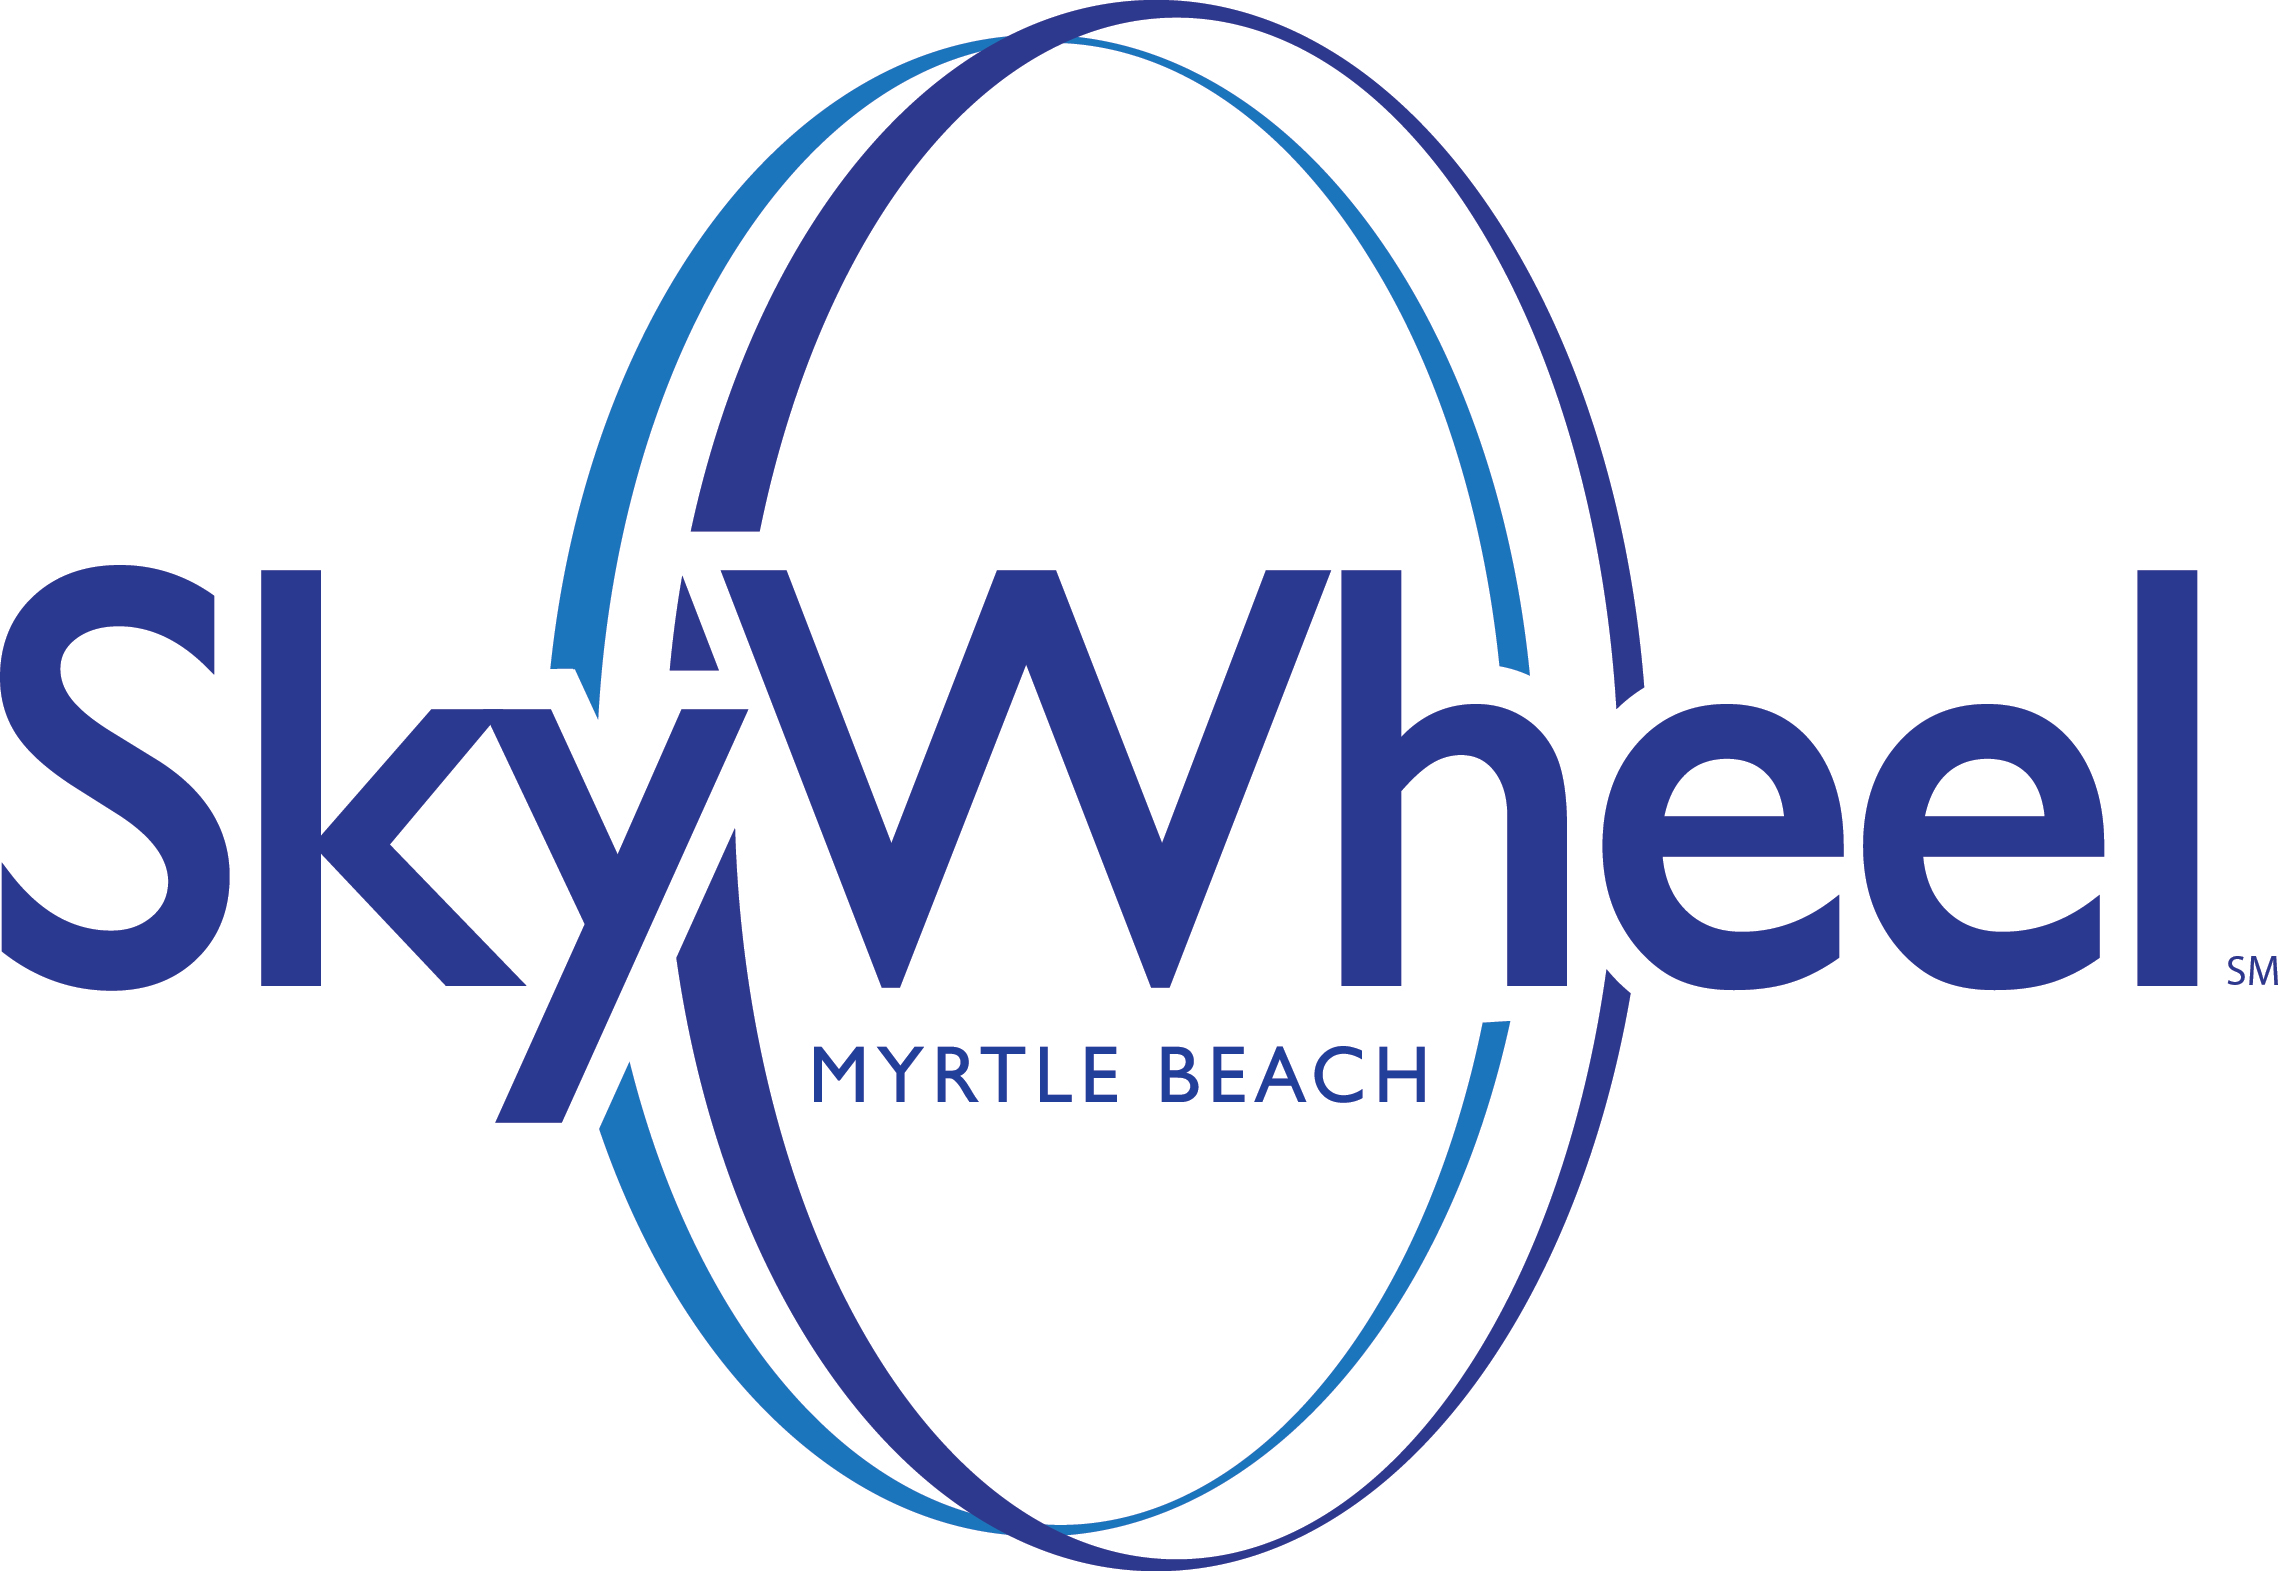 skywheel myrtle beach logo